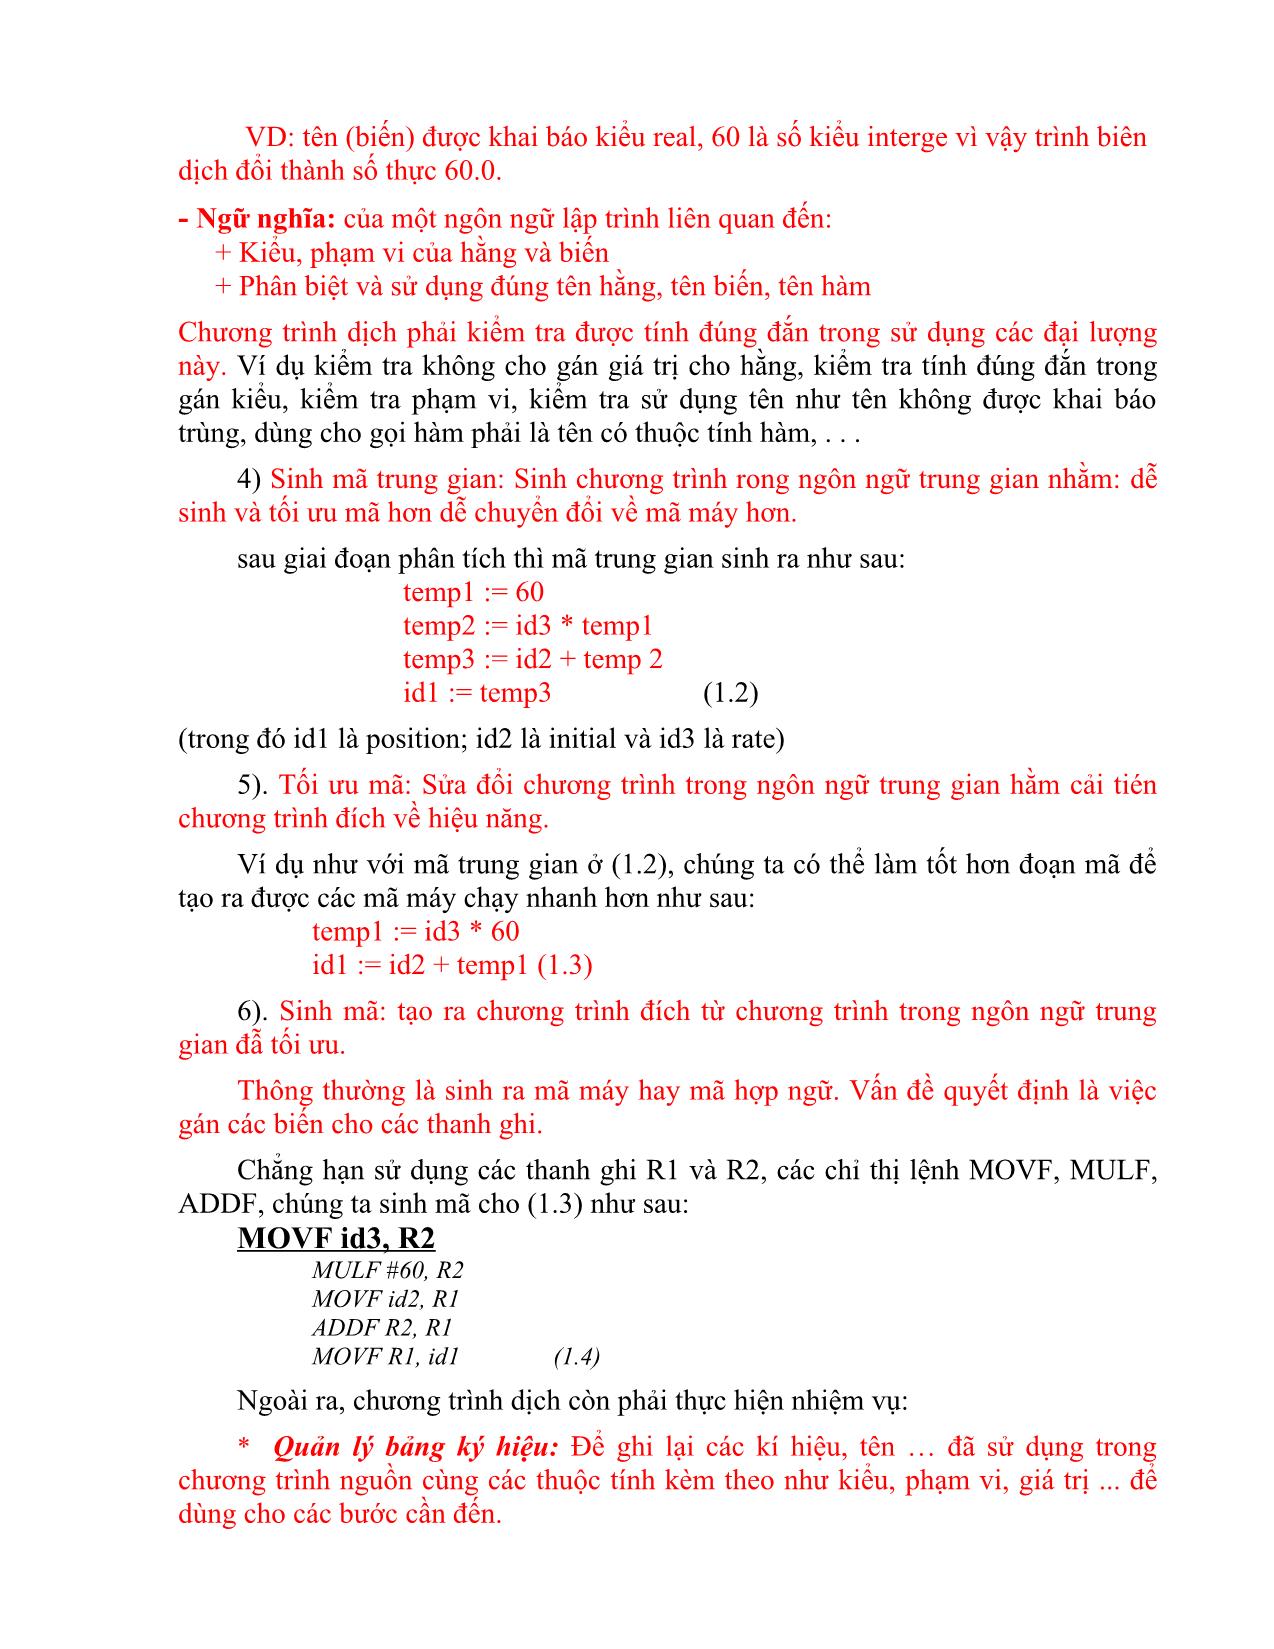 Giáo trình môn Chương trình dịch (Phần 1) trang 10